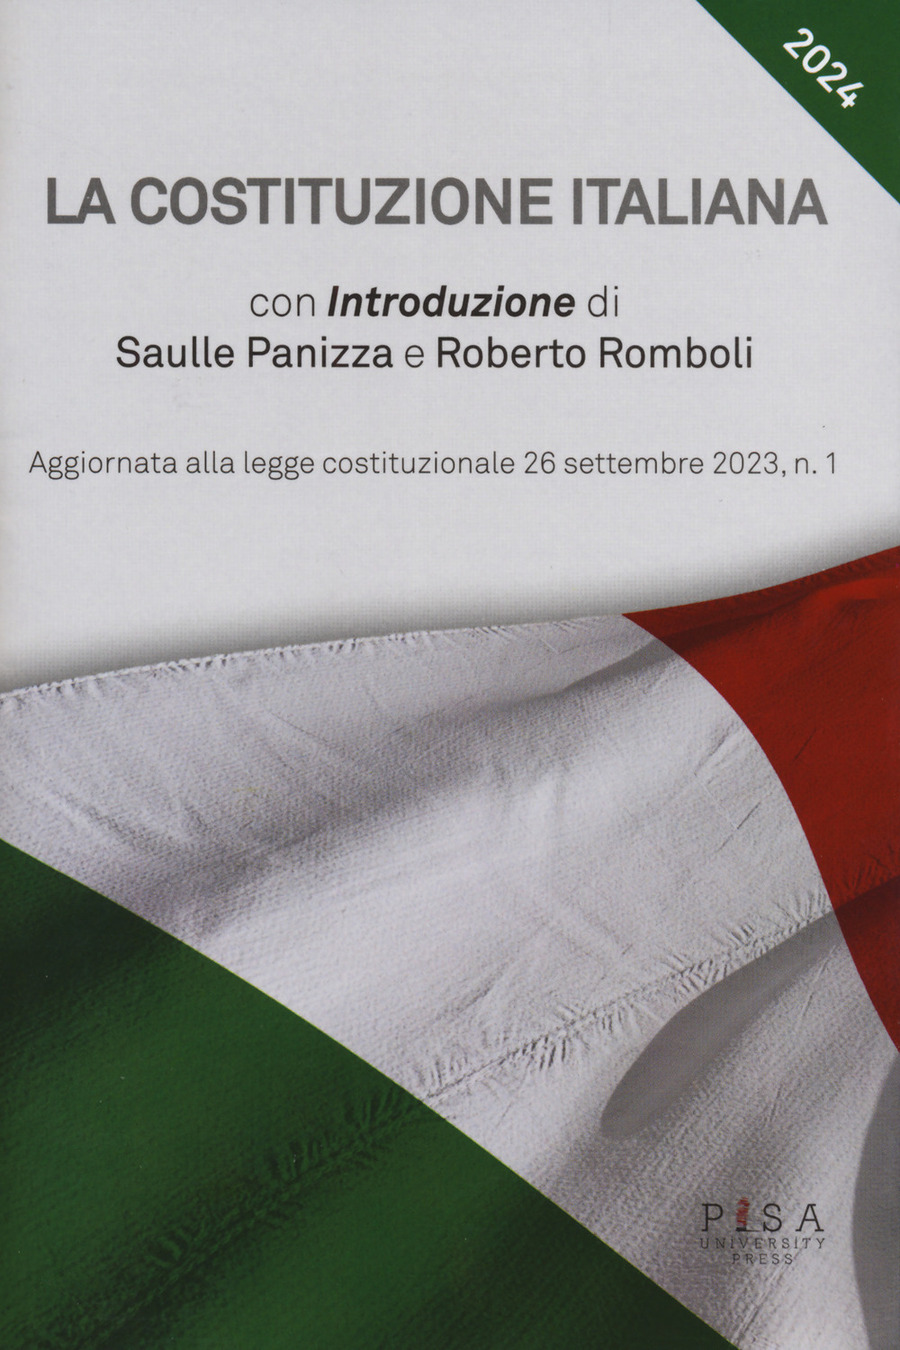 La Costituzione Italiana. Aggiornata alle legge costituzionale 26 settembre 2023, n. 1